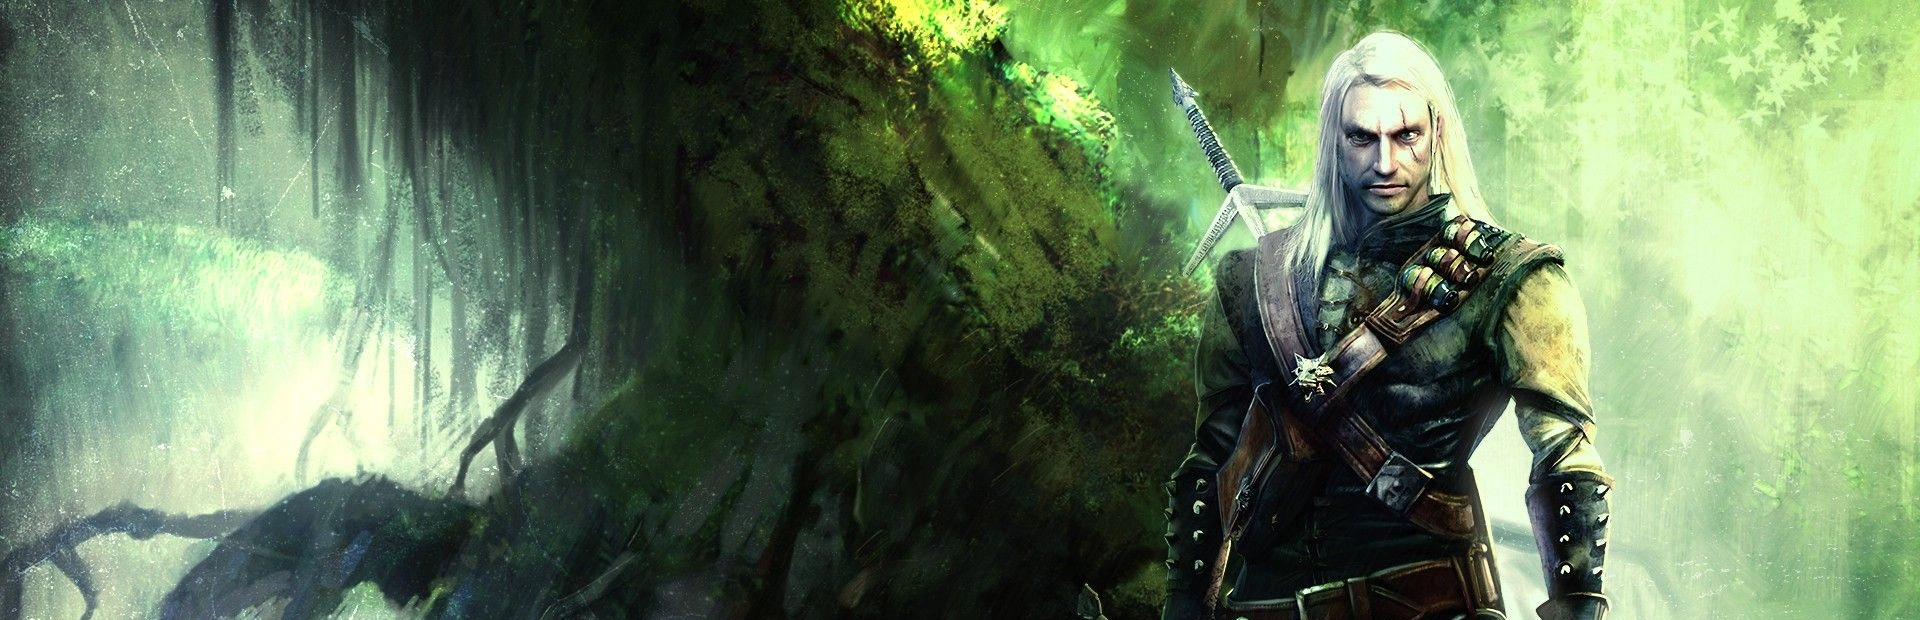 دانلود بازی The Witcher: Enhanced Edition برای PC | گیمباتو